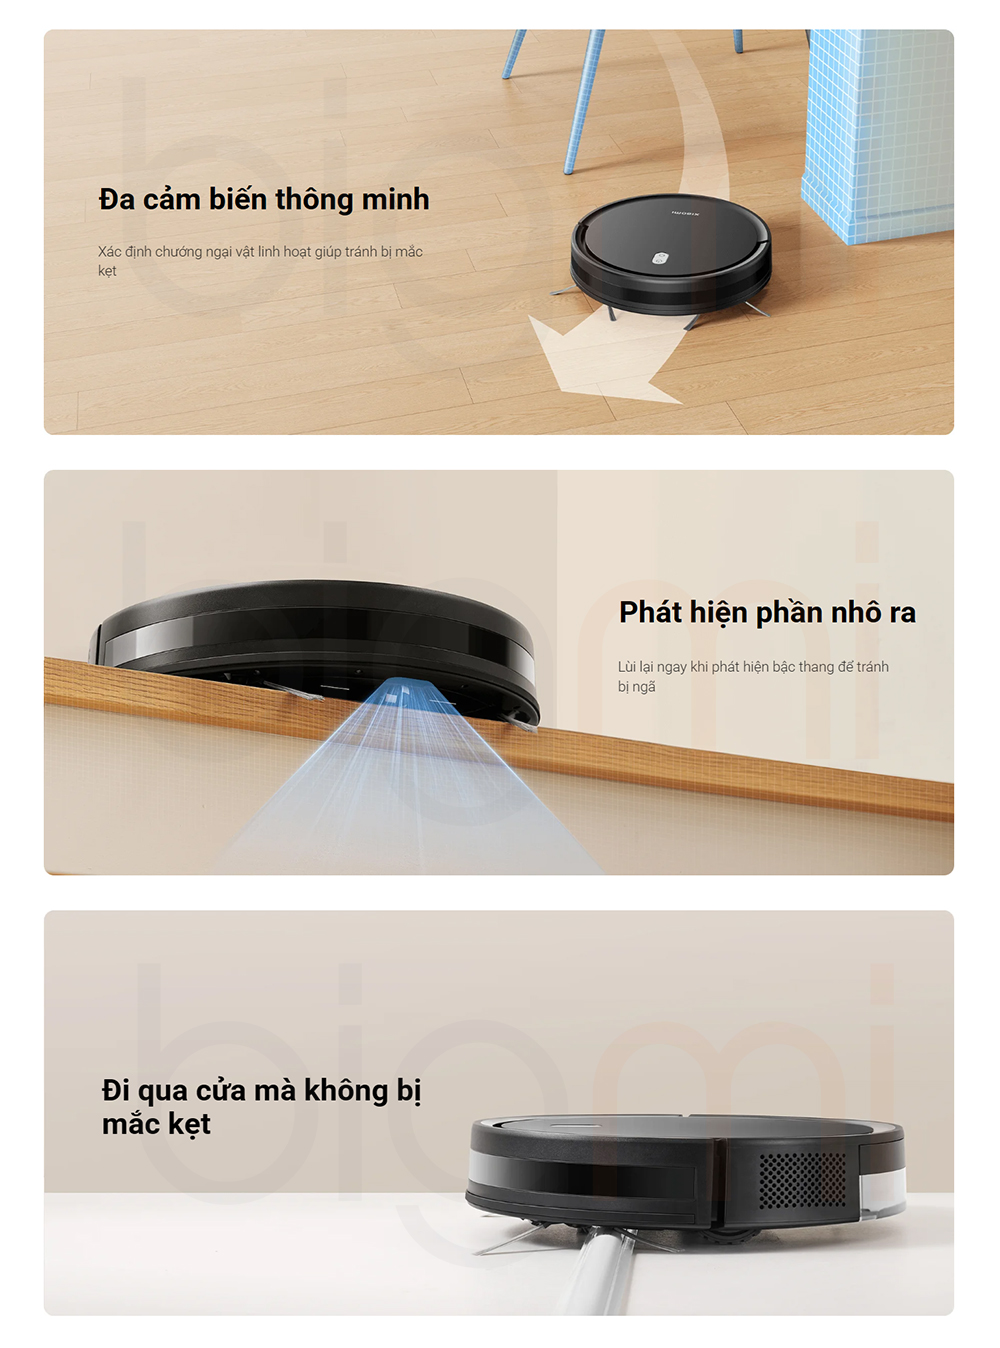 Robot hut bui lau nha Xiaomi Vacuum E5 trang bi nhieu cam bien thong minh